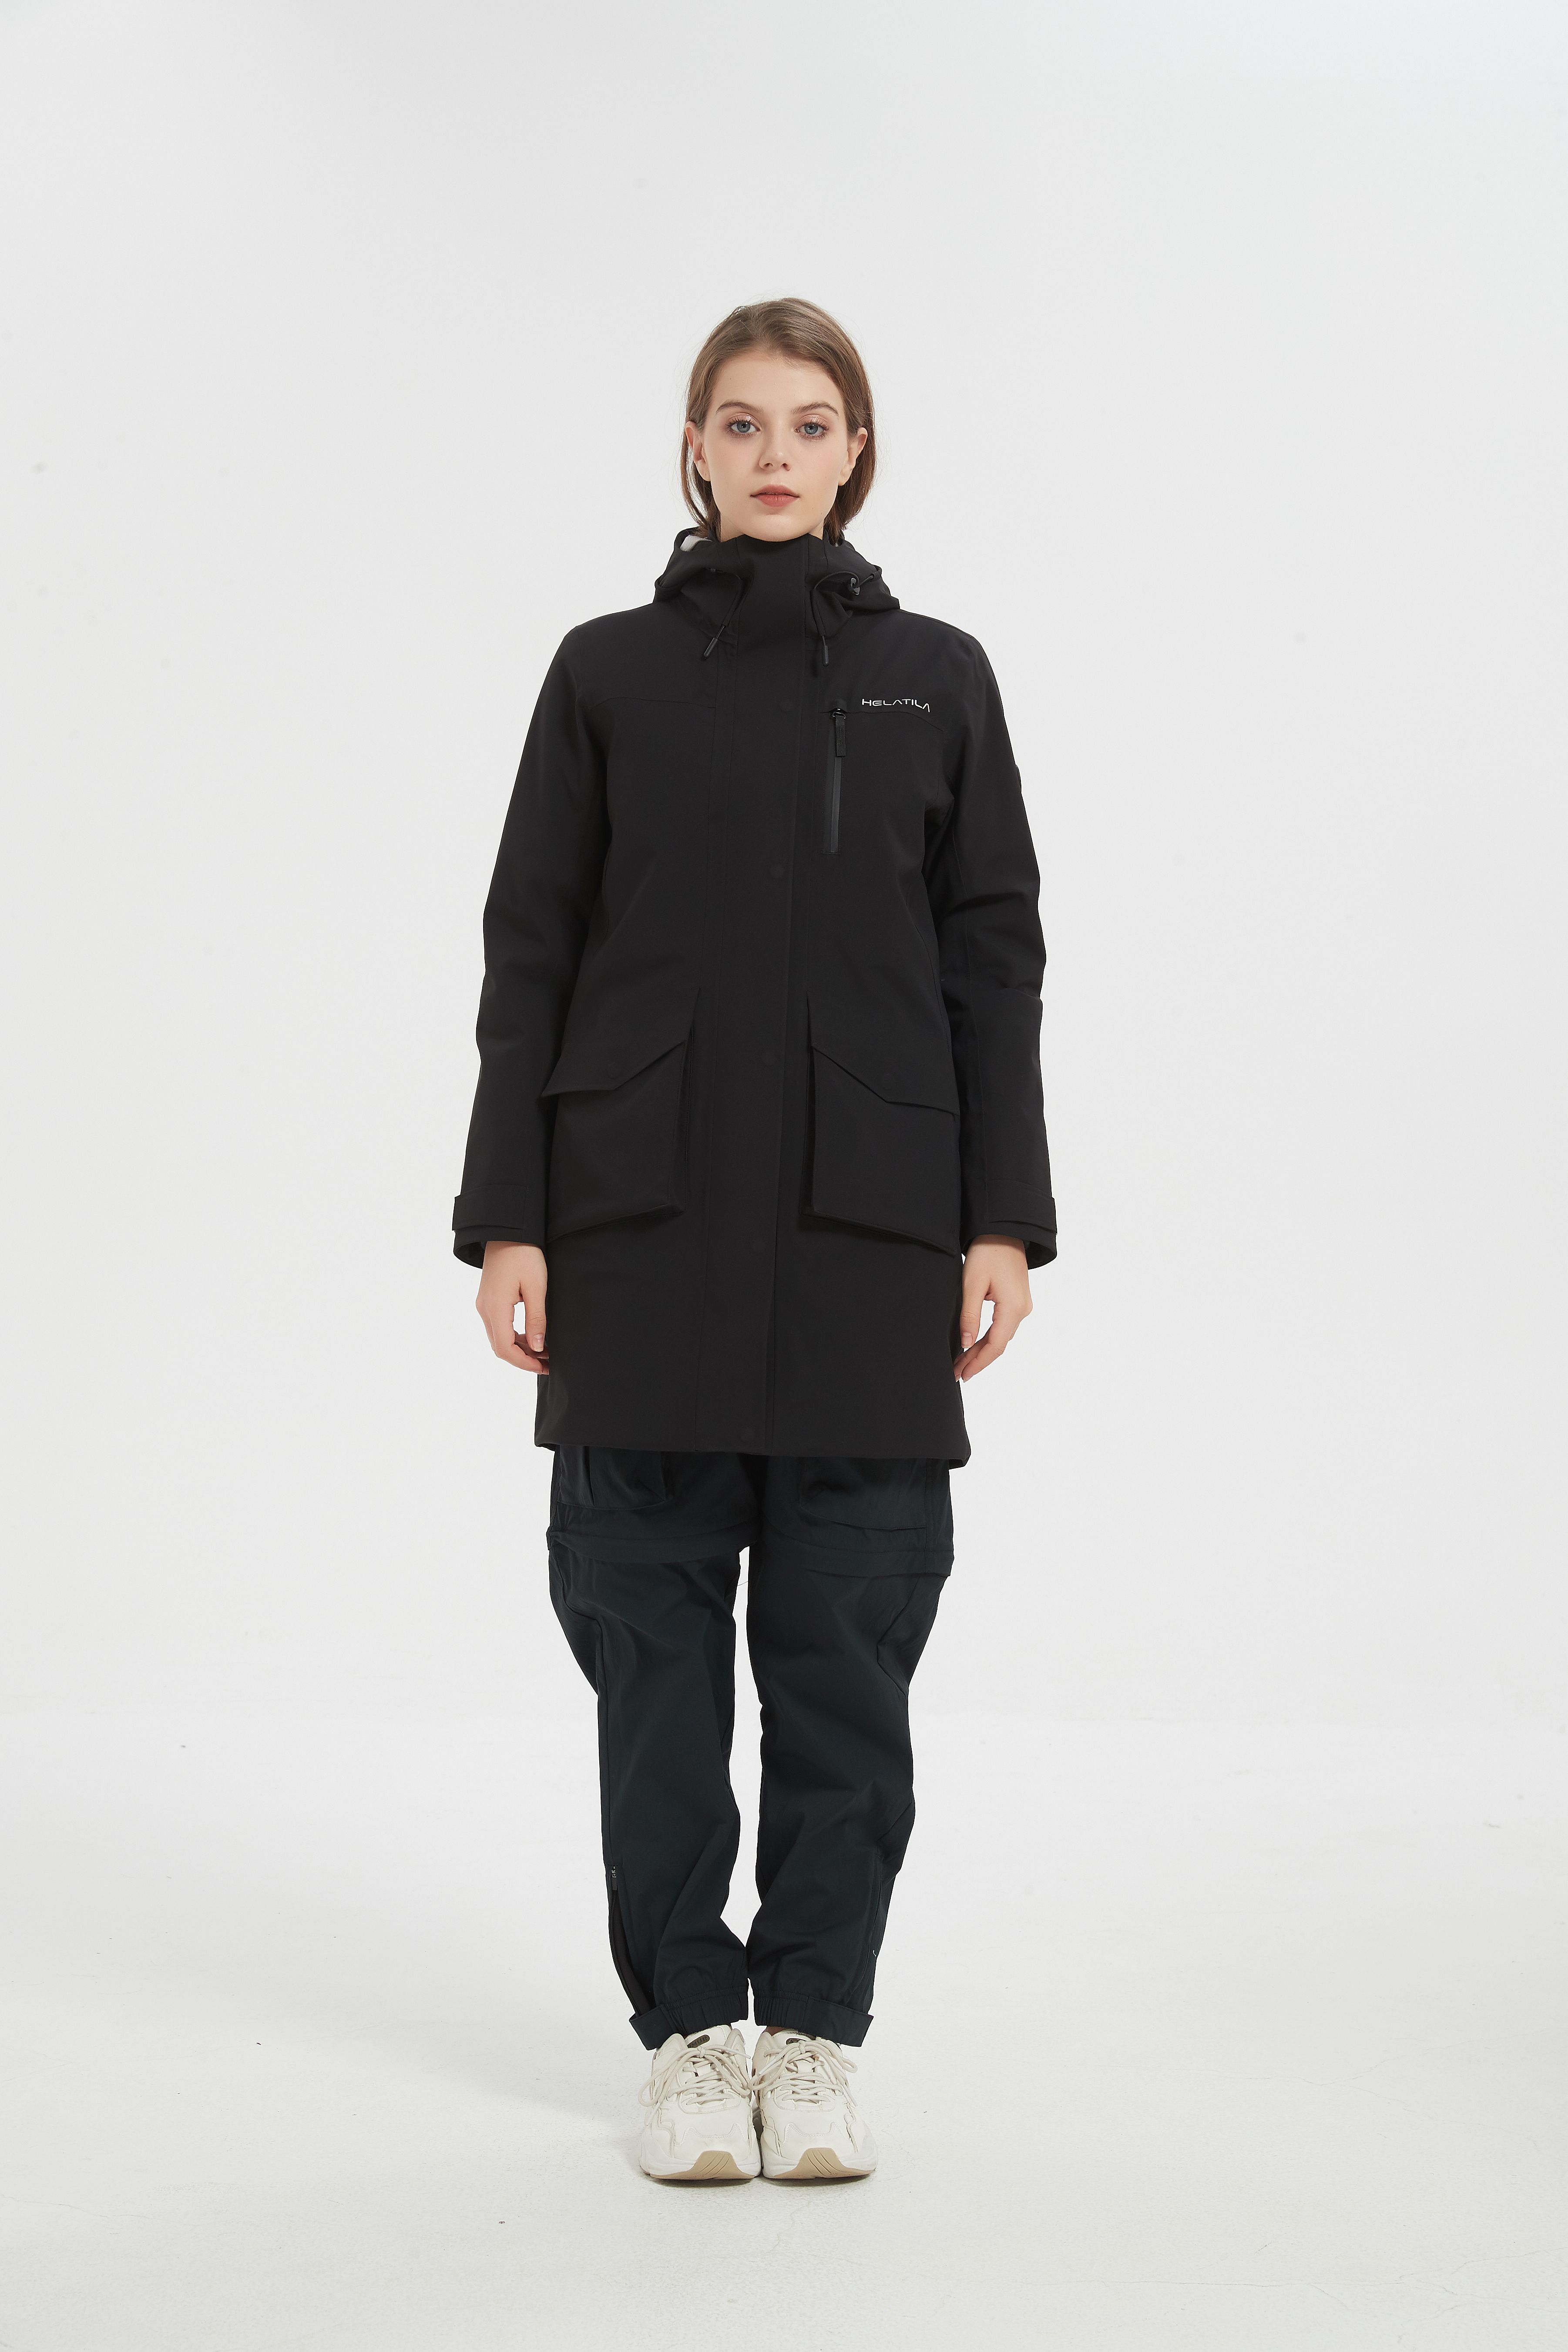 LA24022  Women's winter jacket